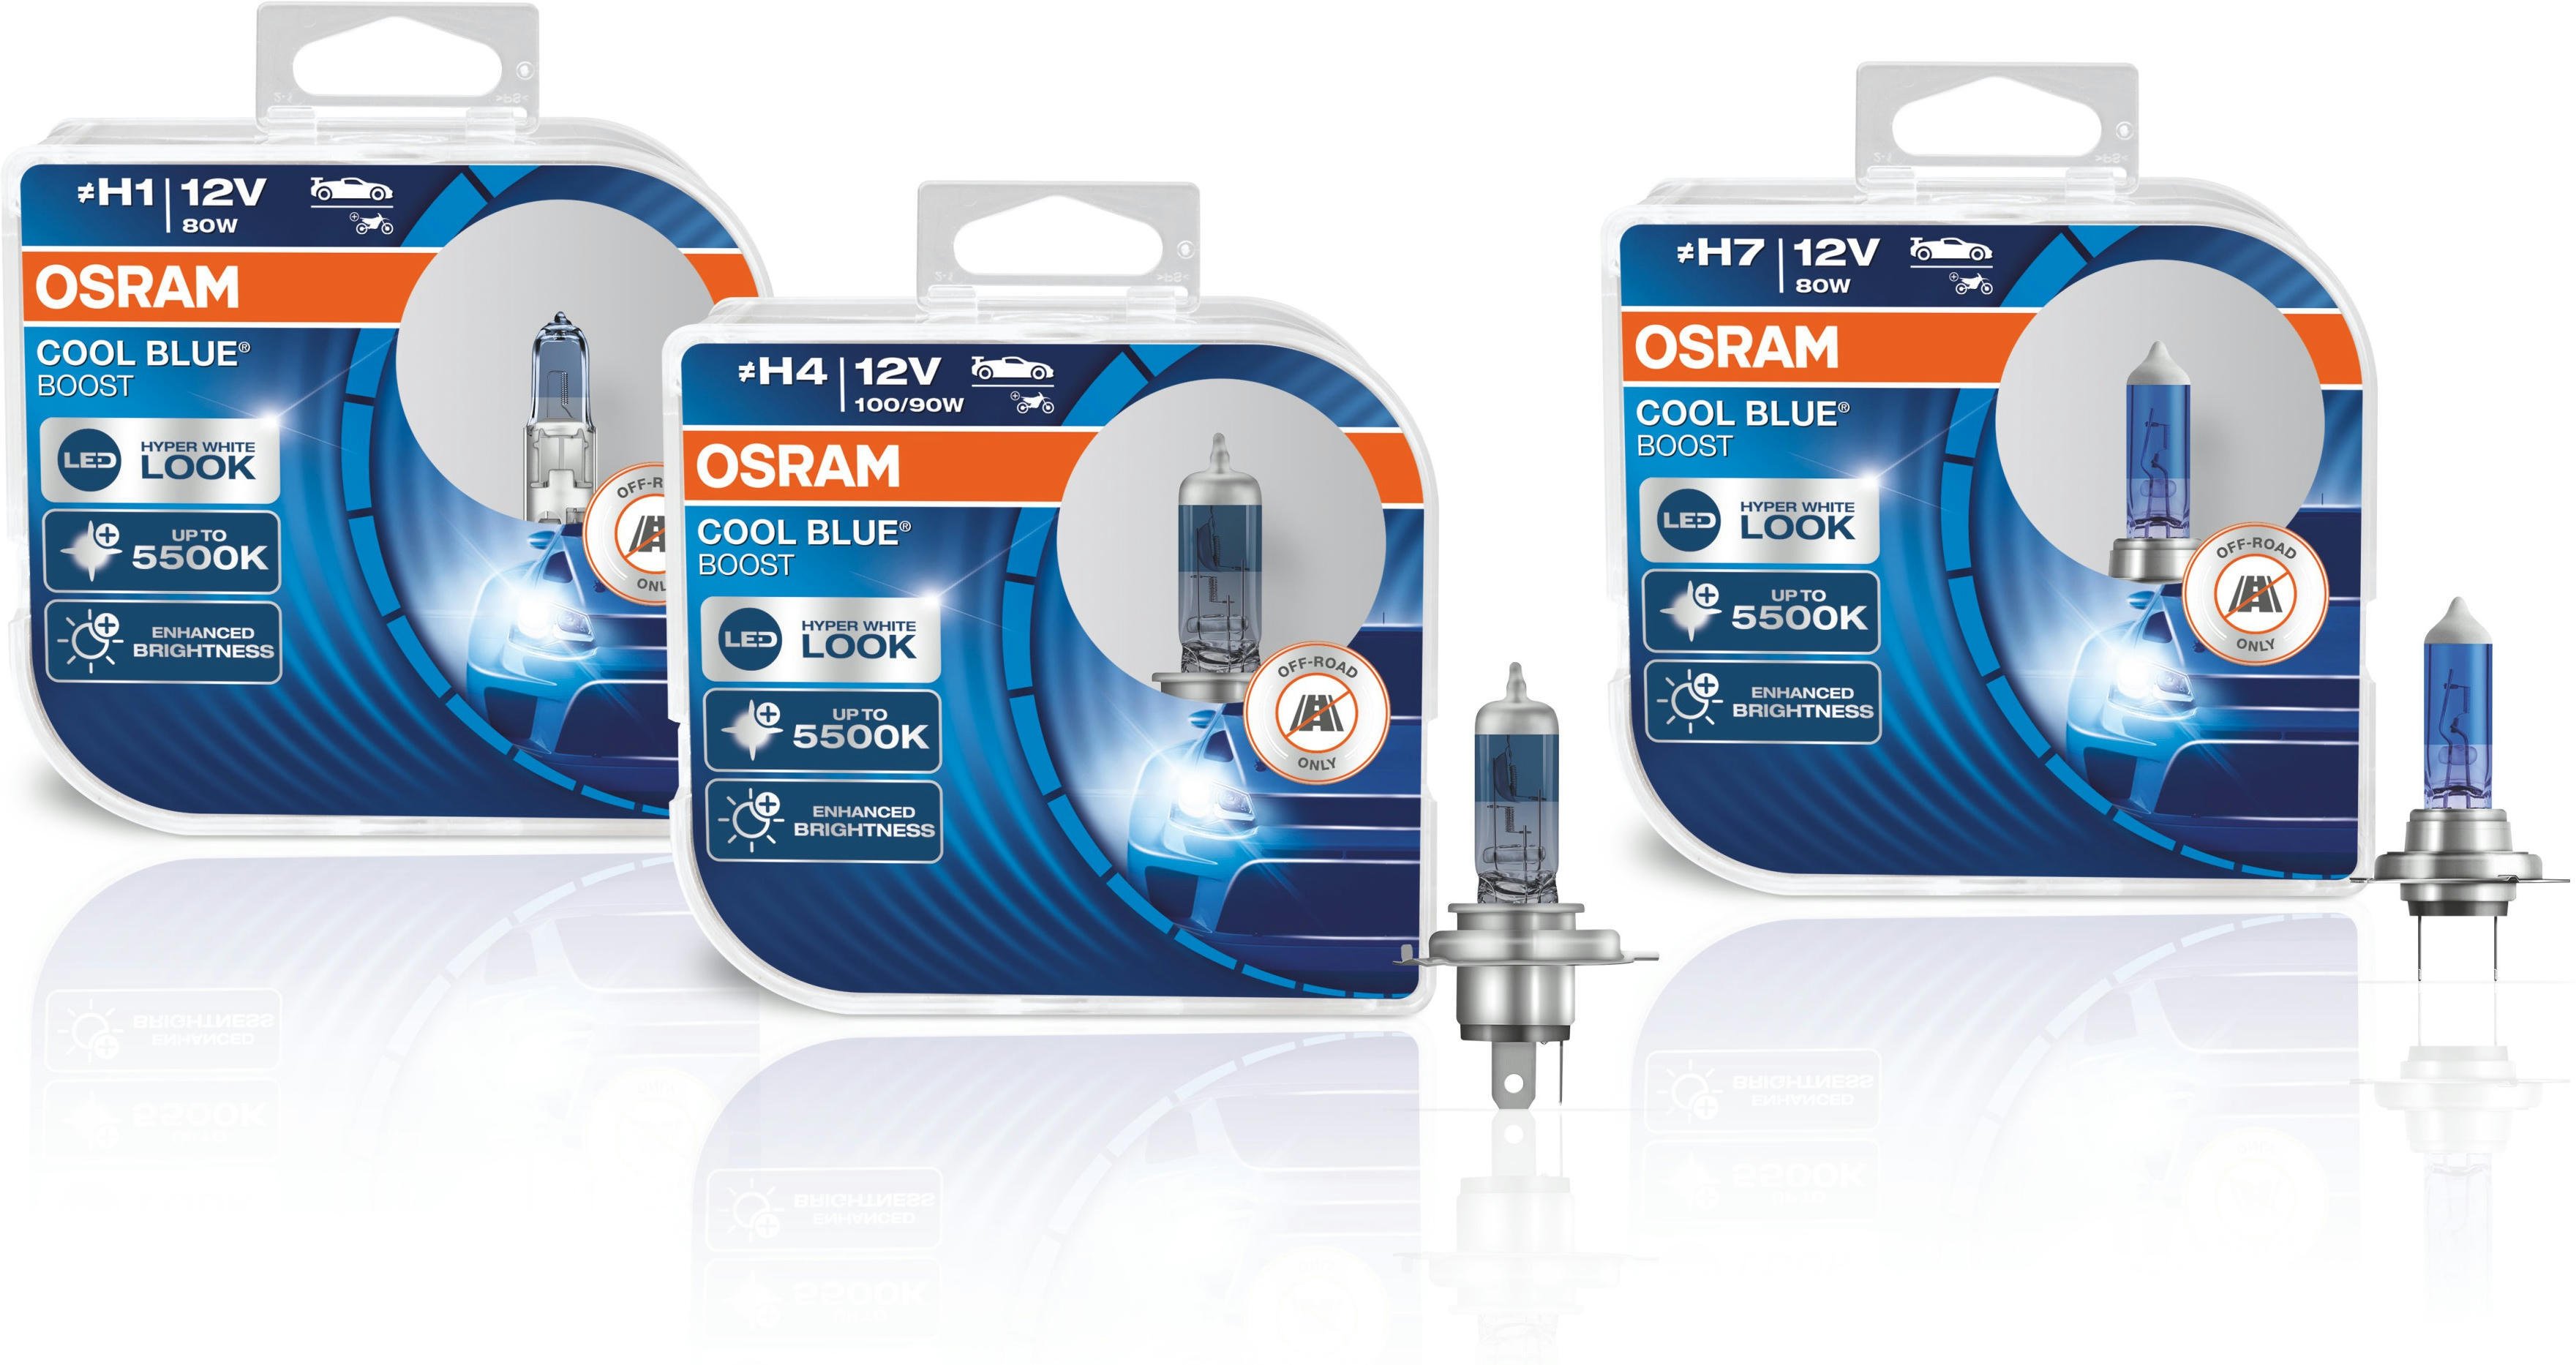 Лампа Osram галогеновая 12V H4 100/90W P43 Cool Blue Boost, Duobox (2шт) (OS_62193_CBB-HCB) фото 6